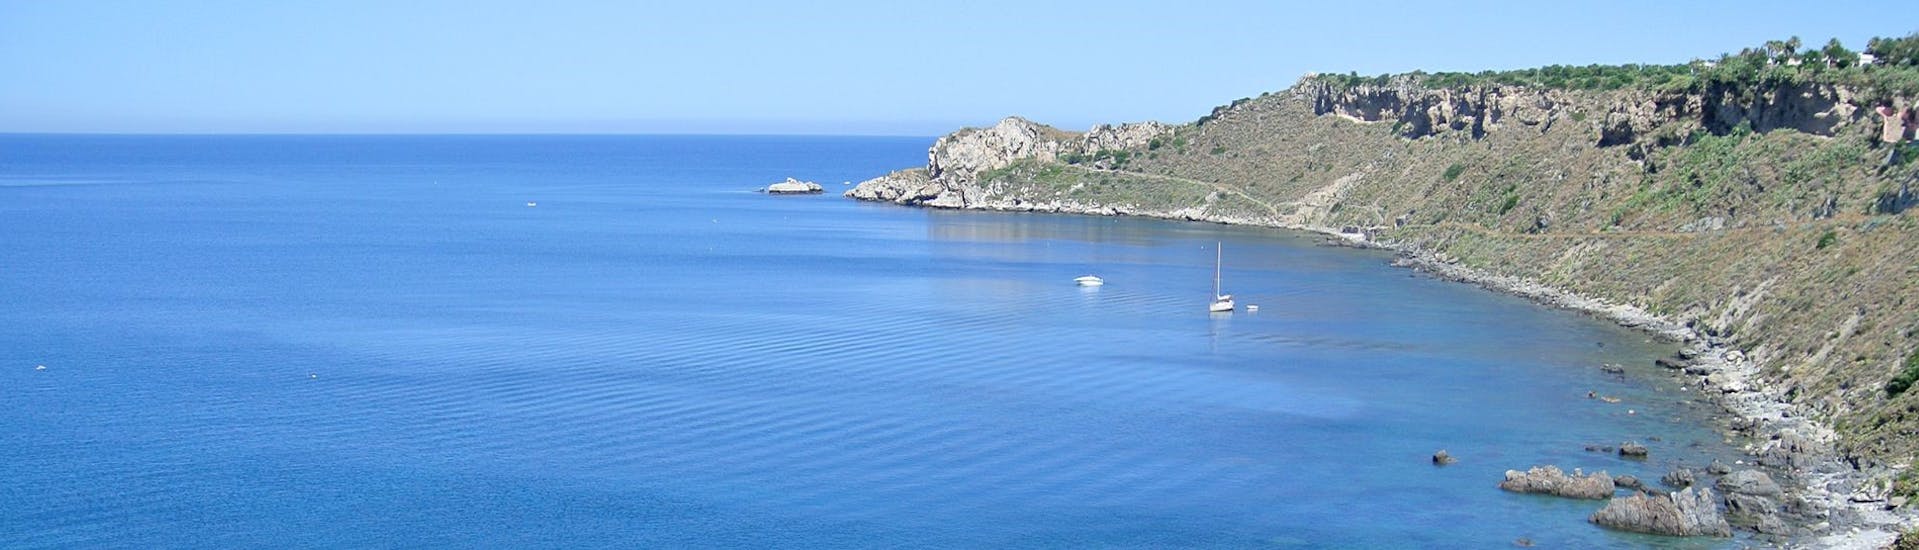 Blick vom Boot von Sky Sea Charter während der privaten Bootstour von Milazzo nach Panarea und Stromboli.